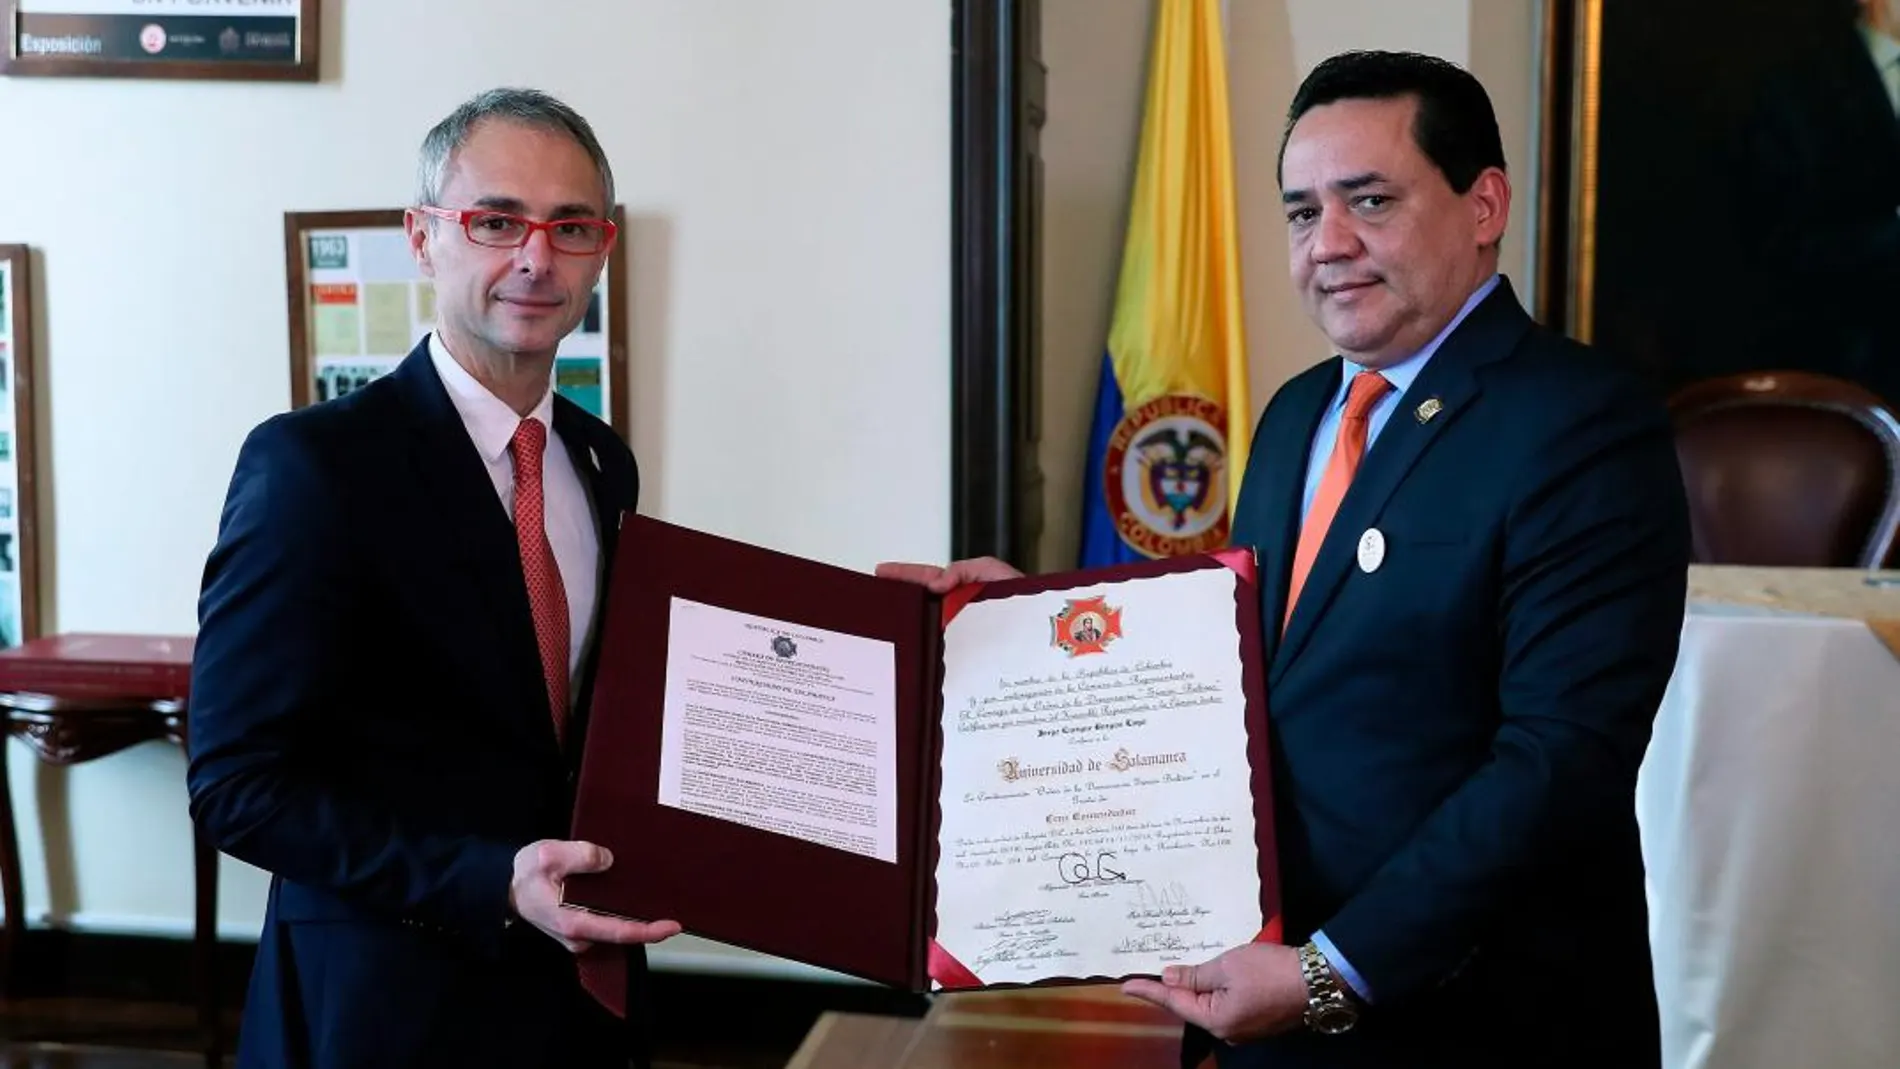 El rector de la Universidad de Salamanca, Ricardo Rivero, recibe una condecoración de manos del representante del Congreso colombiano, Jorge Burgos